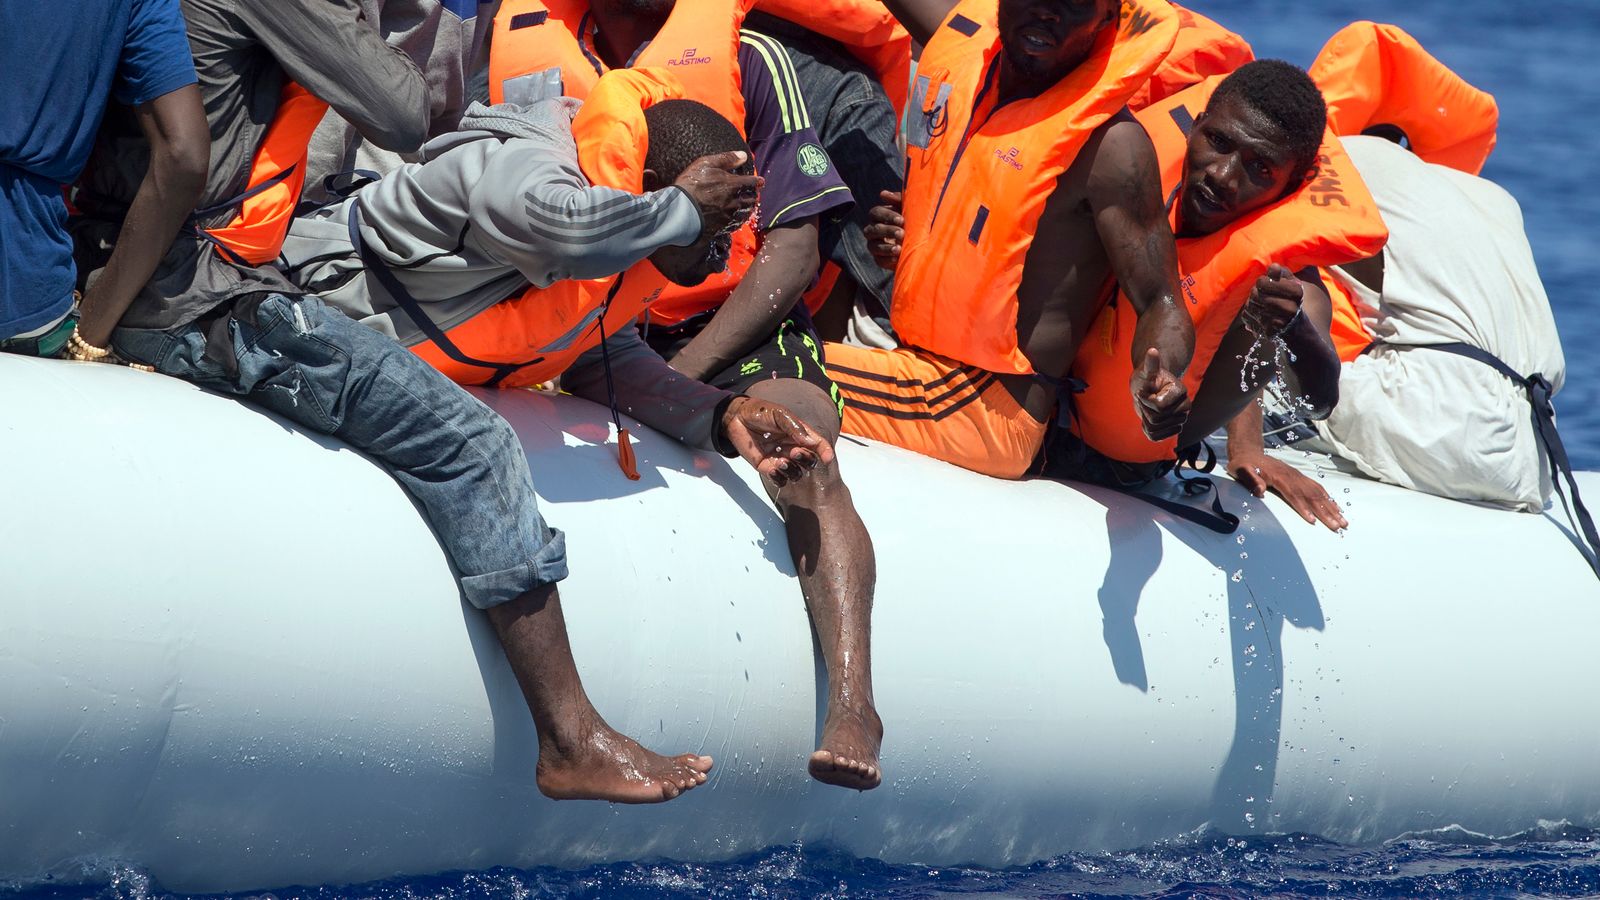 Le agenzie umanitarie soccorrono 110 barconi migranti dal Mar Mediterraneo